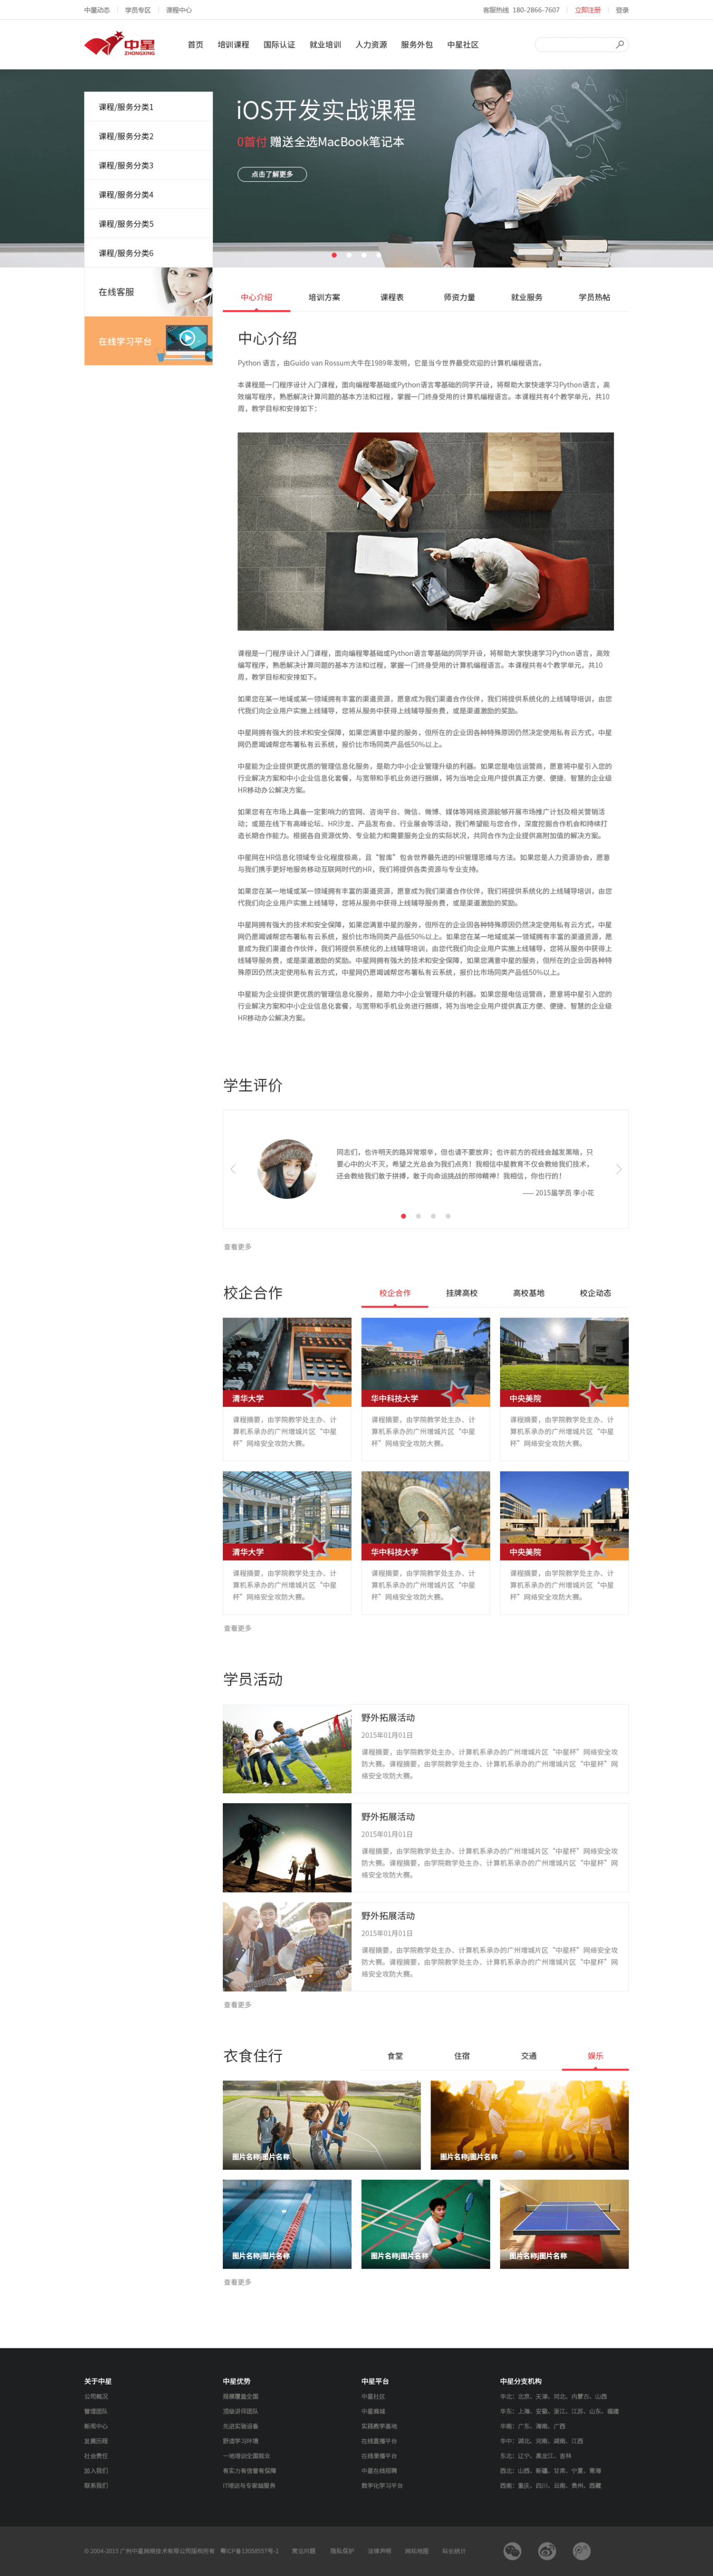 中星集团网站界面设计图2